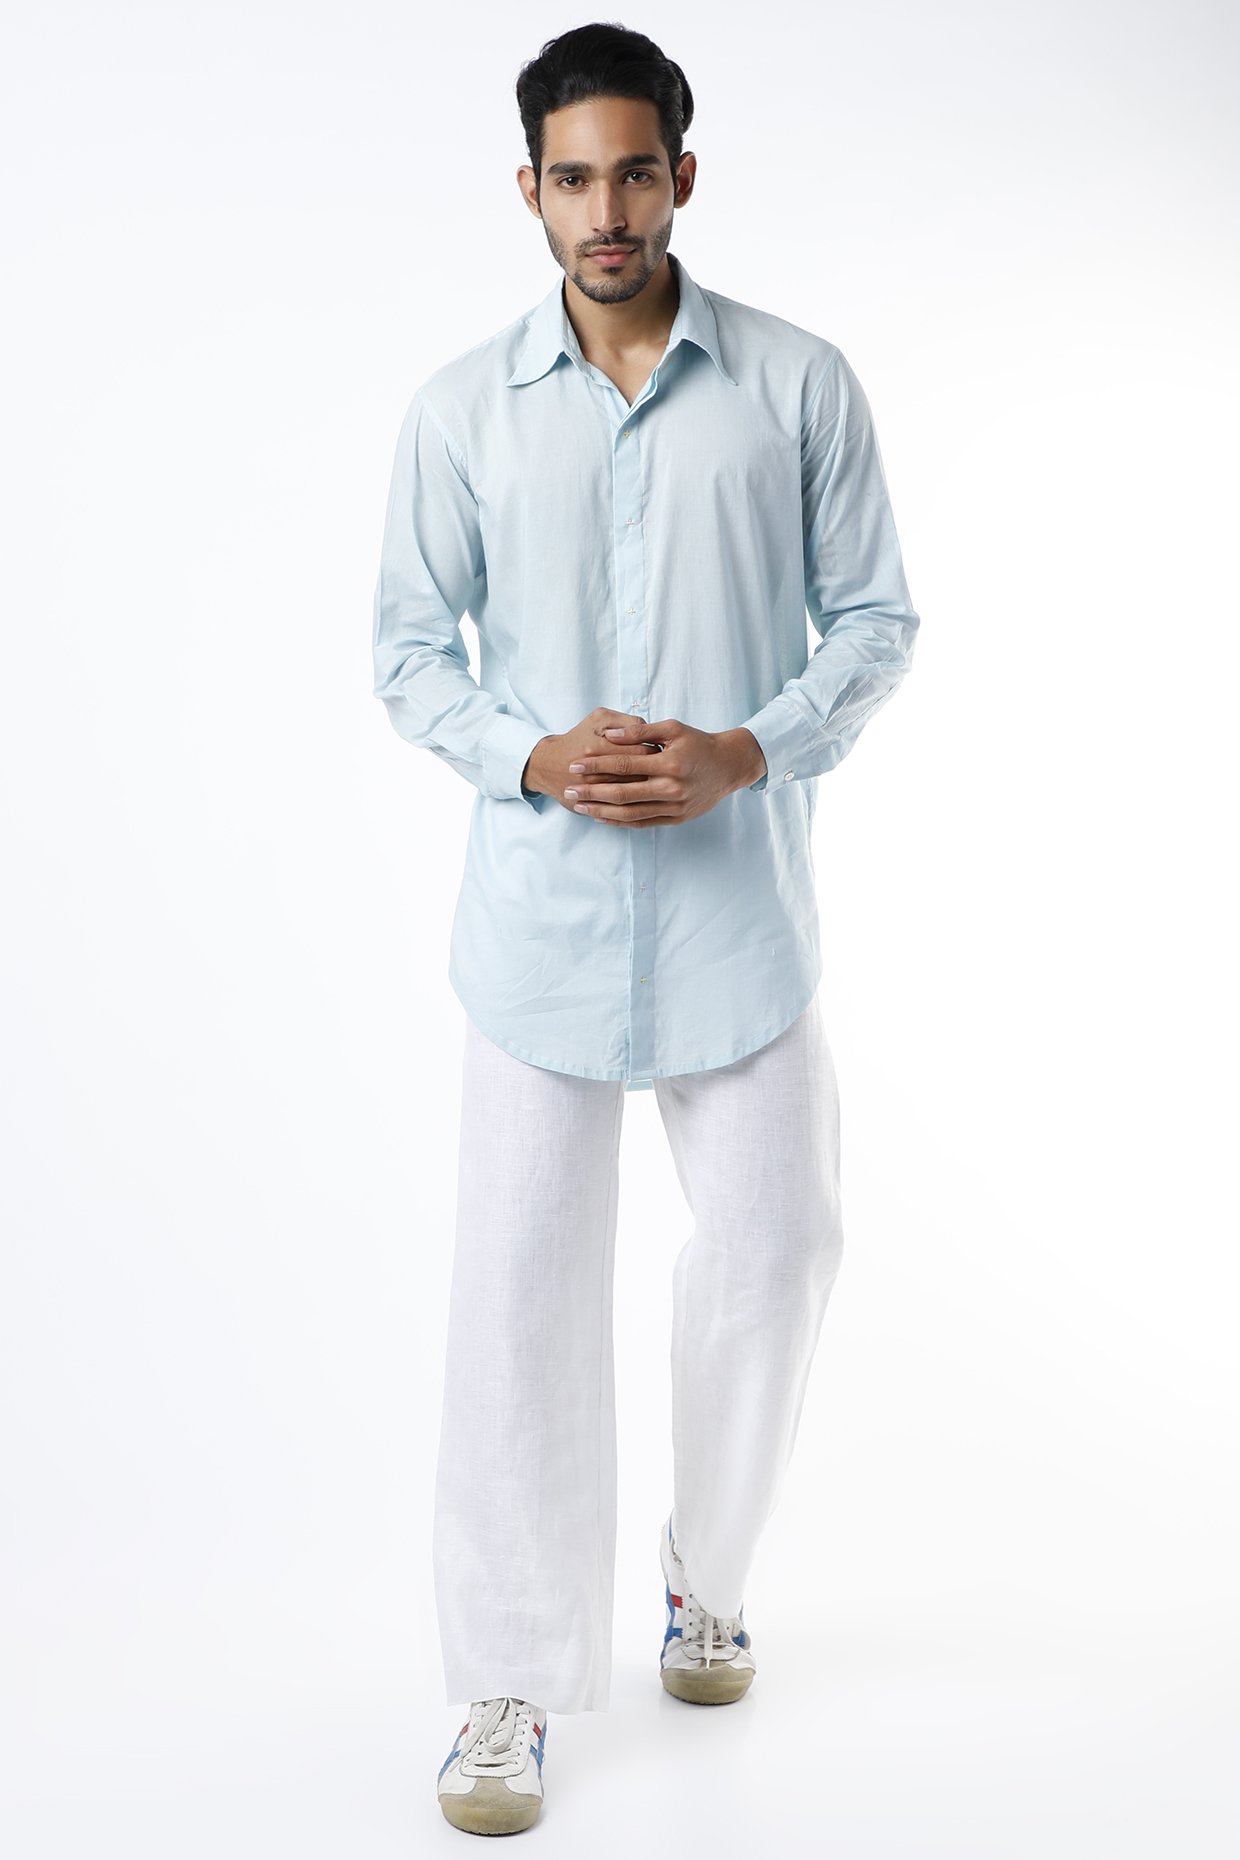 Men's khaki worker pants, tucked in white shirt, white sneakers outfit |  Khaki pants outfit men, Shirt outfit men, White shirt men